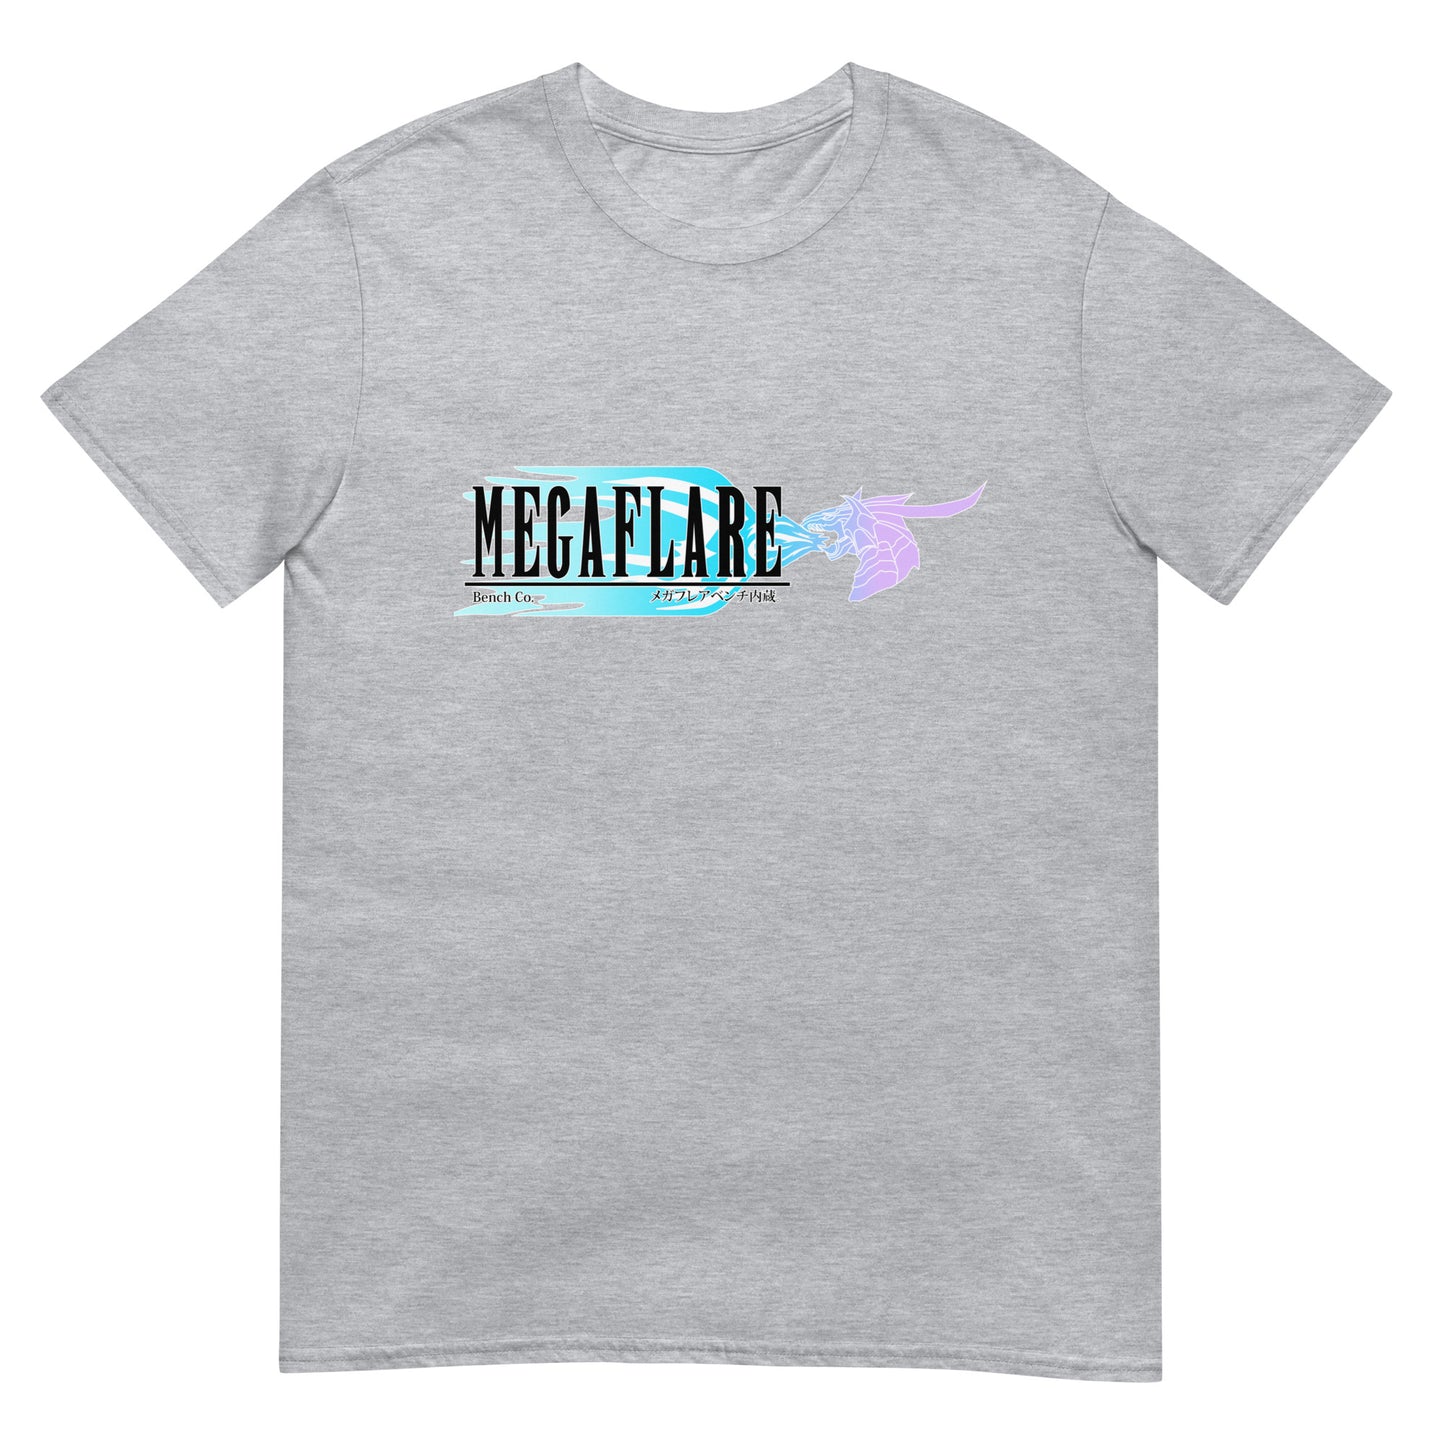 Megaflare Bench Co.